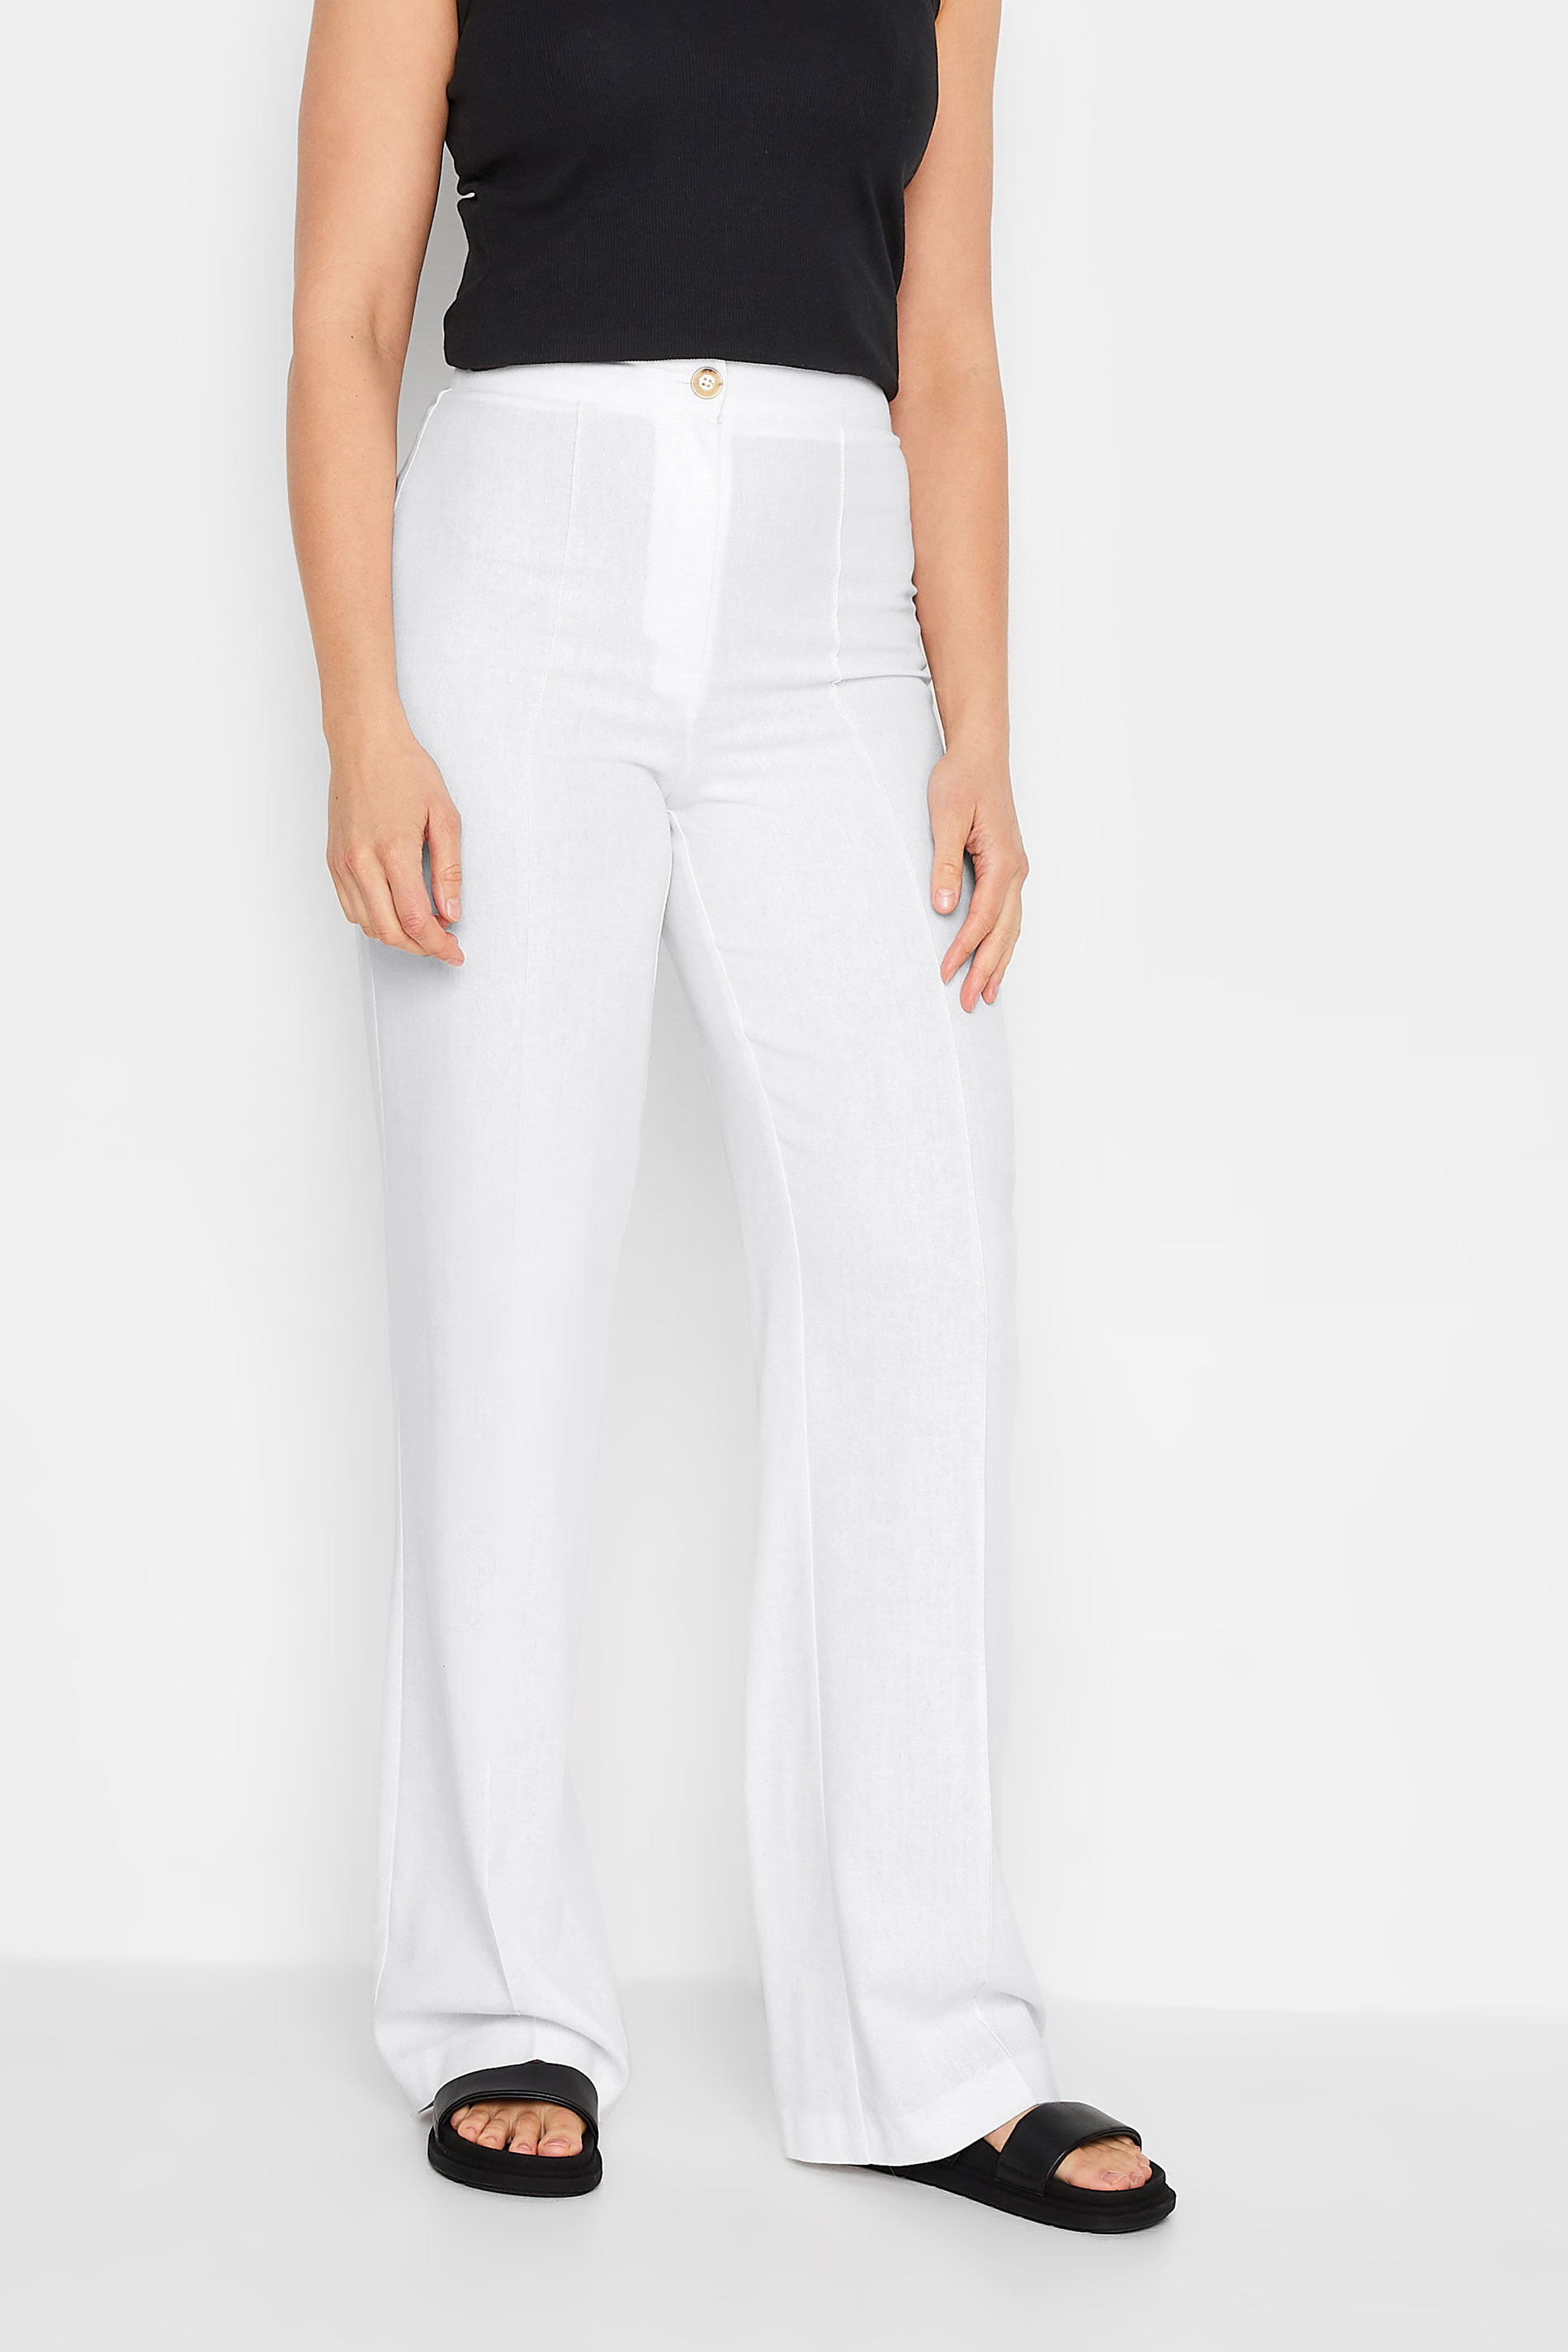 LTS Tall Women's White Wide Leg Linen Trousers | Long Tall Sally 1